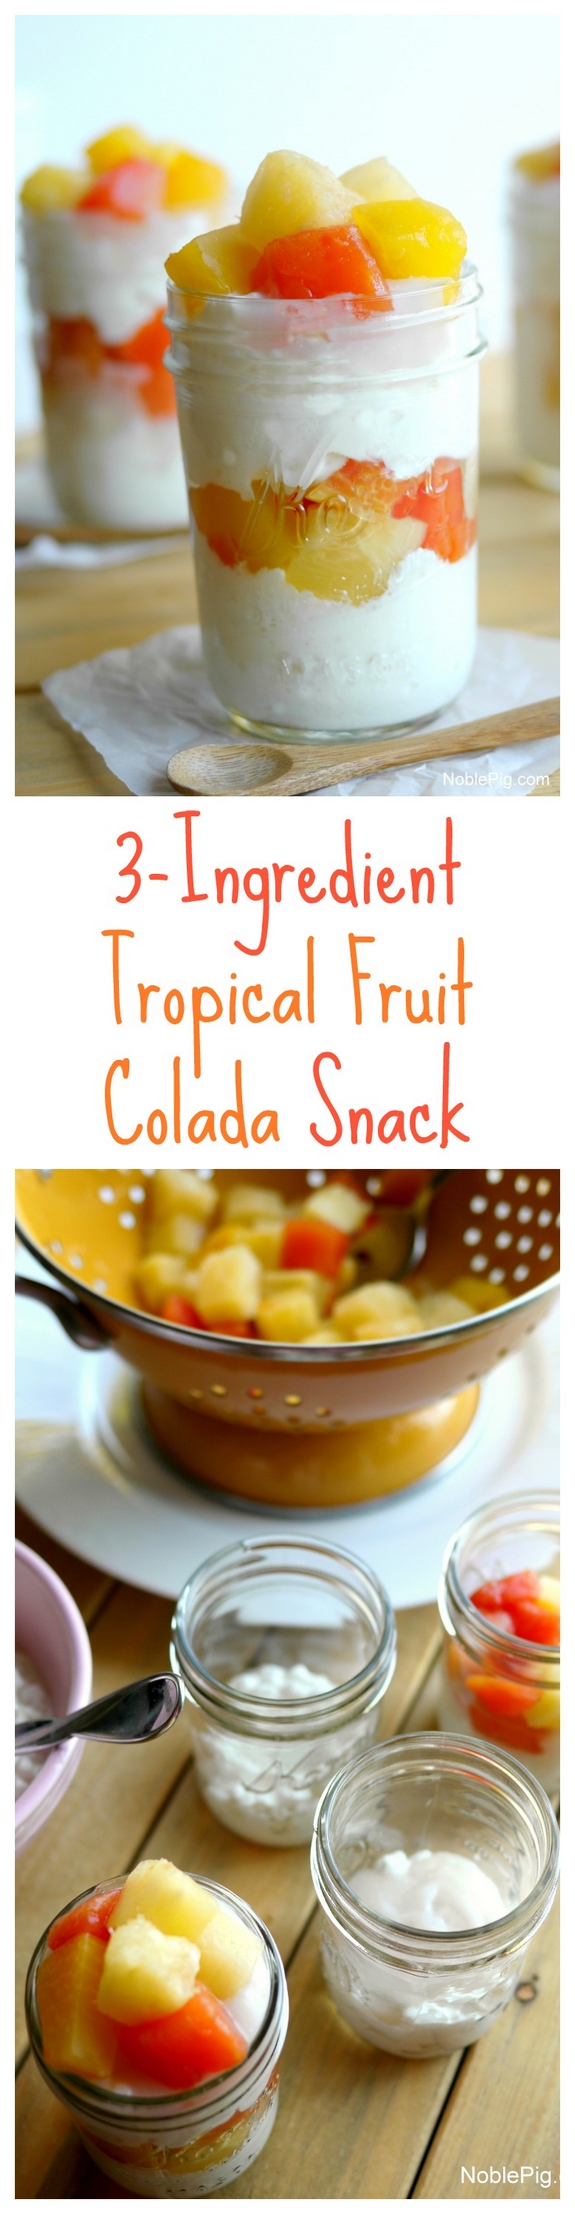 3-Ingredient Tropical Friut Colada Snack via @cmpollak1